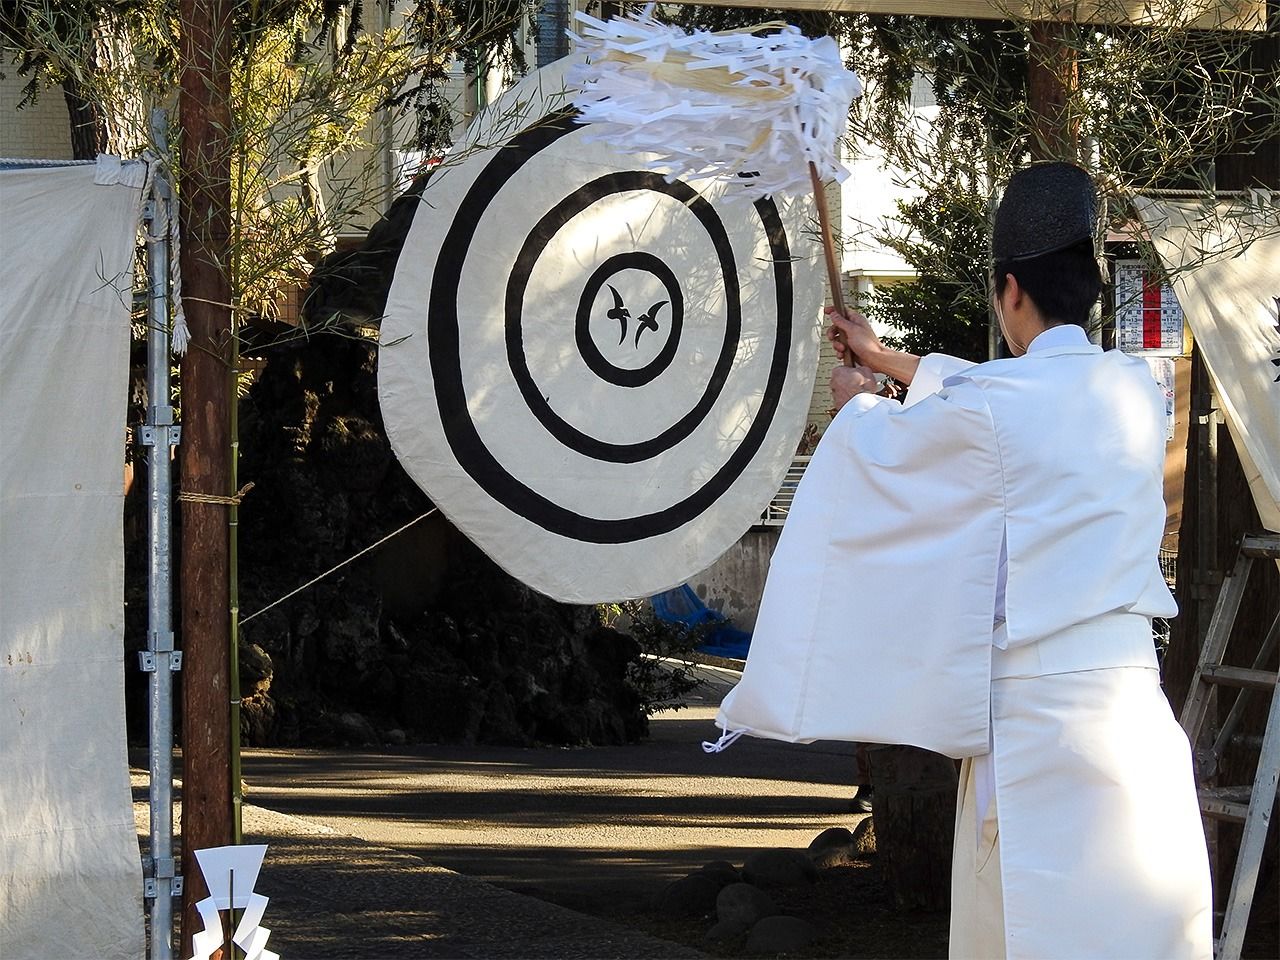 Pendant le festival obisha-matsuri, à la mi-janvier, un prêtre devant une cible ornée d’un corbeau.